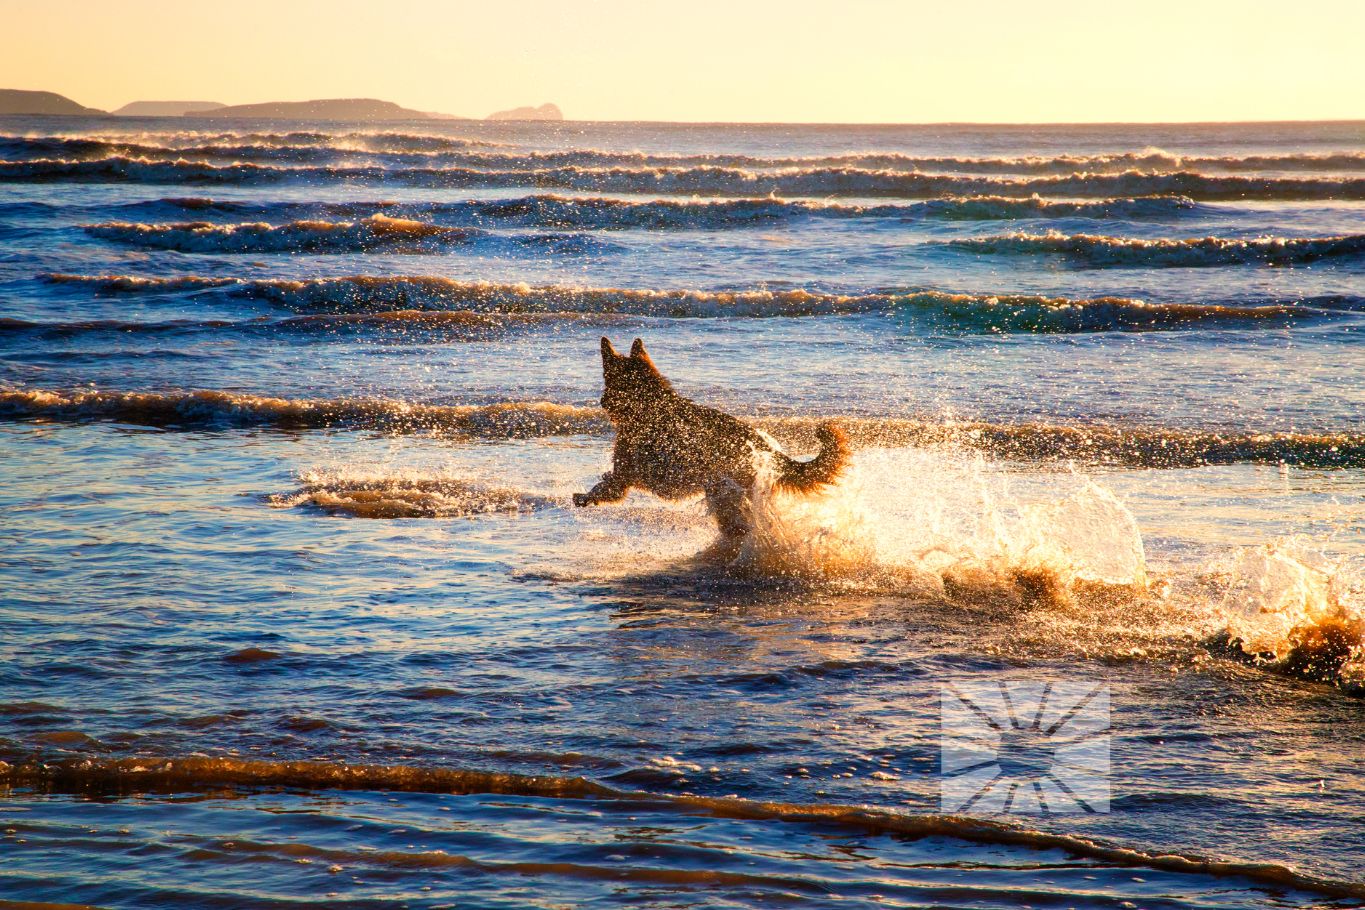 Ontdek de hondvriendelijke stranden van de Costa Blanca Noord